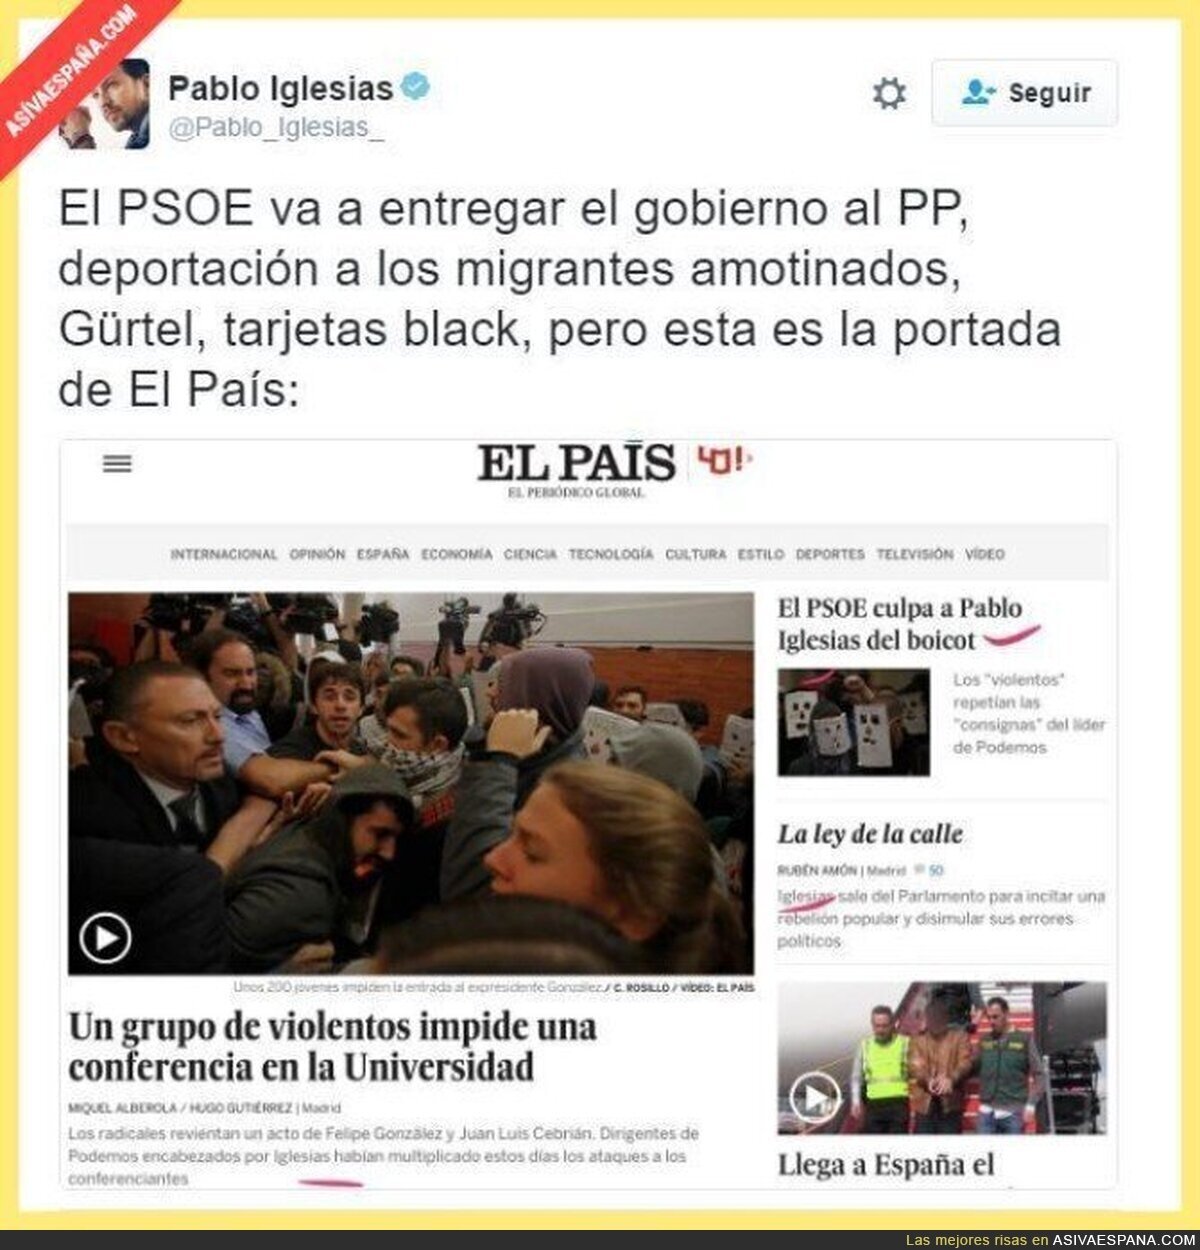 Desviando la atención, nivel: El País